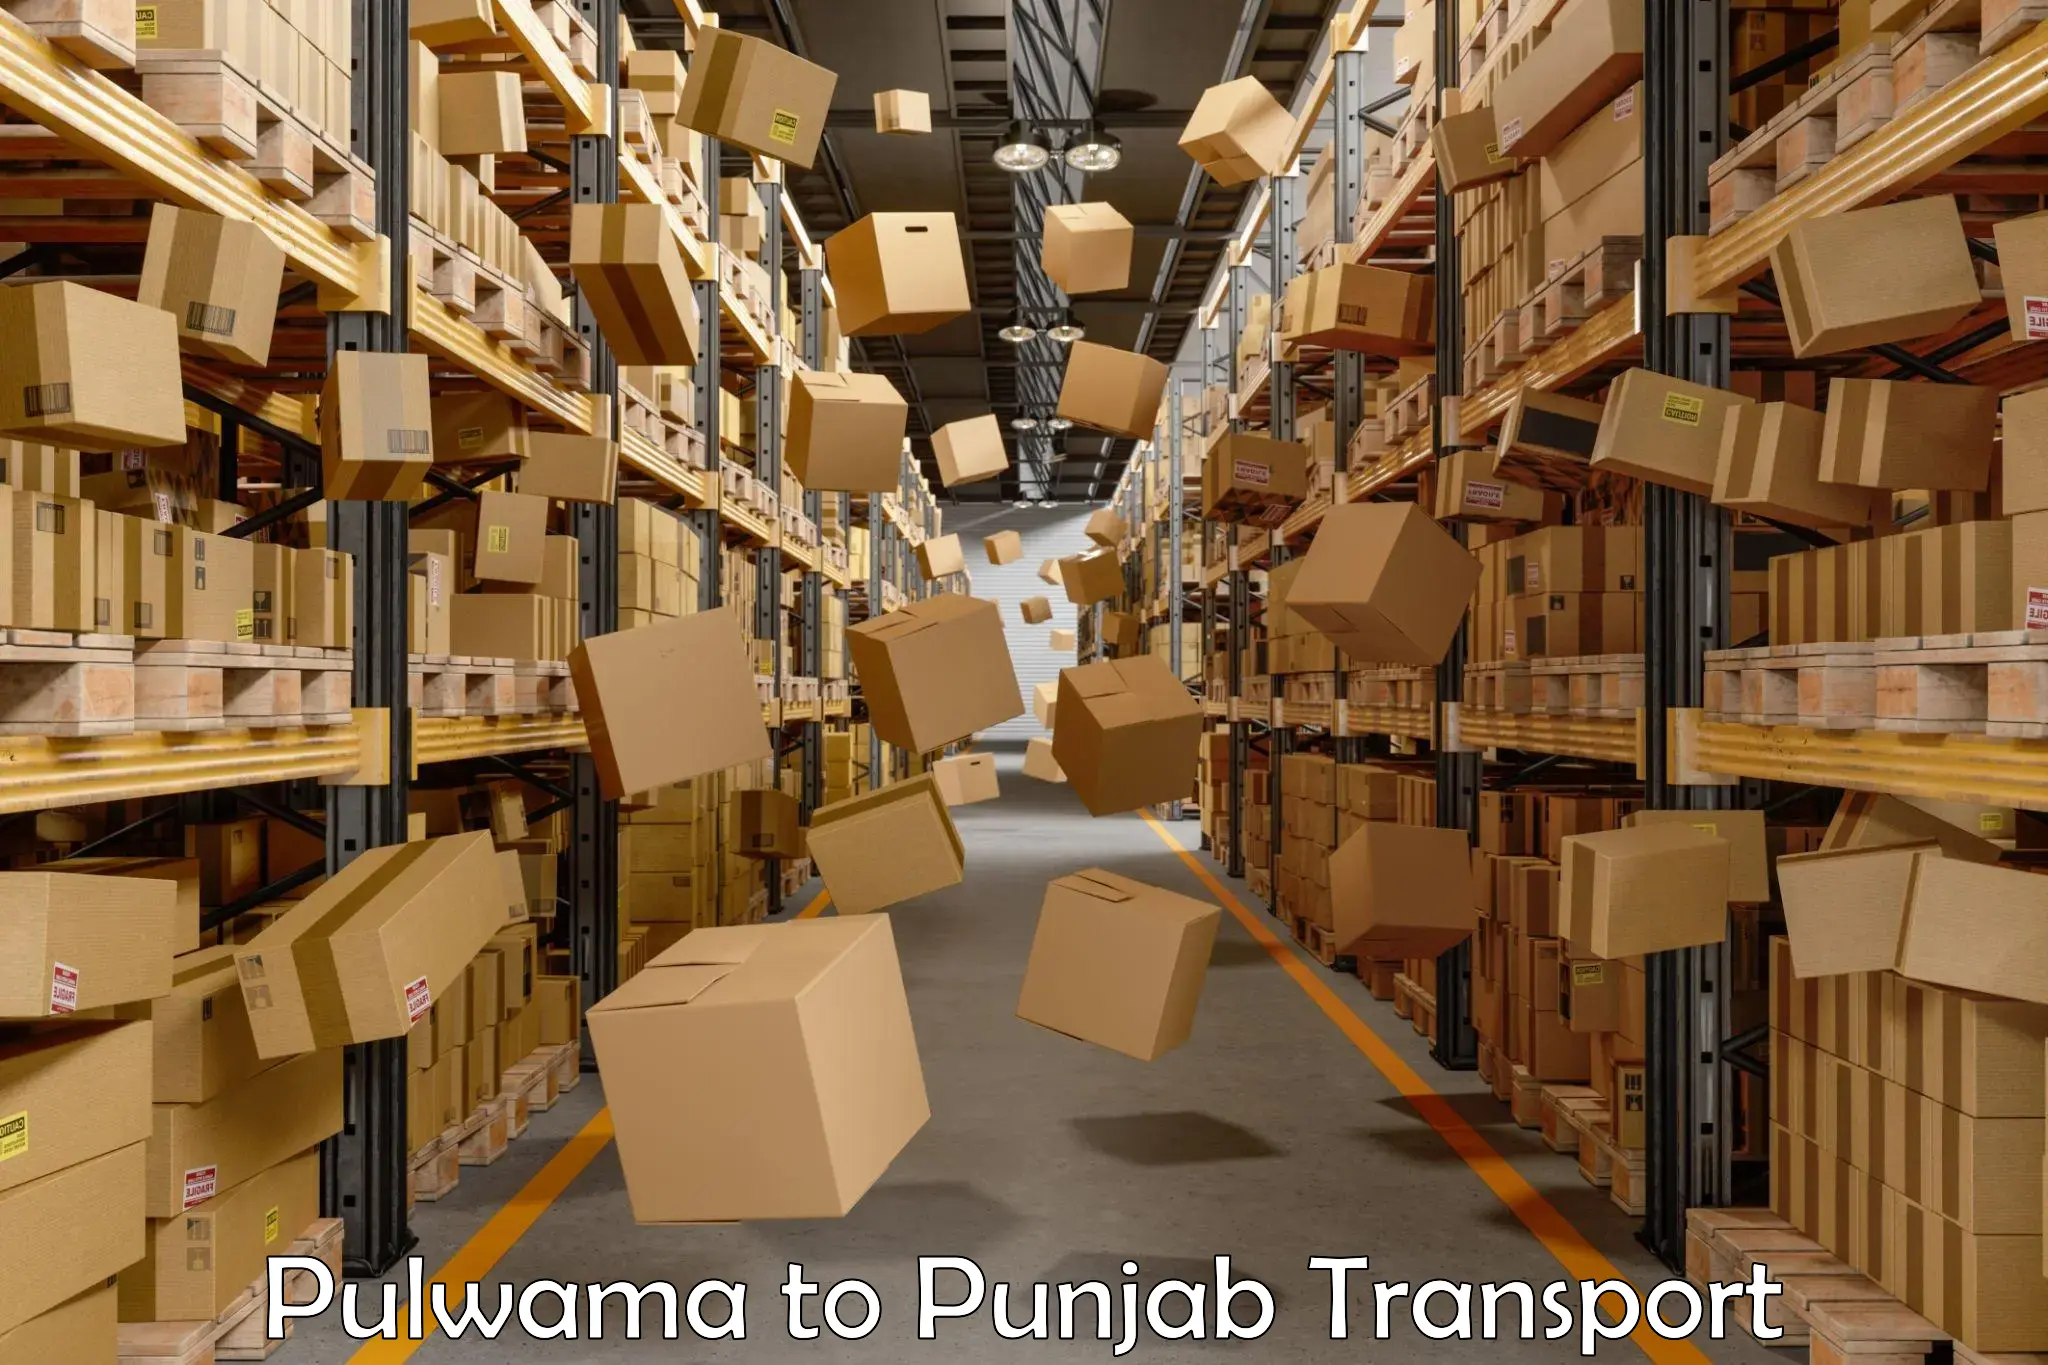 Road transport online services Pulwama to Kotkapura